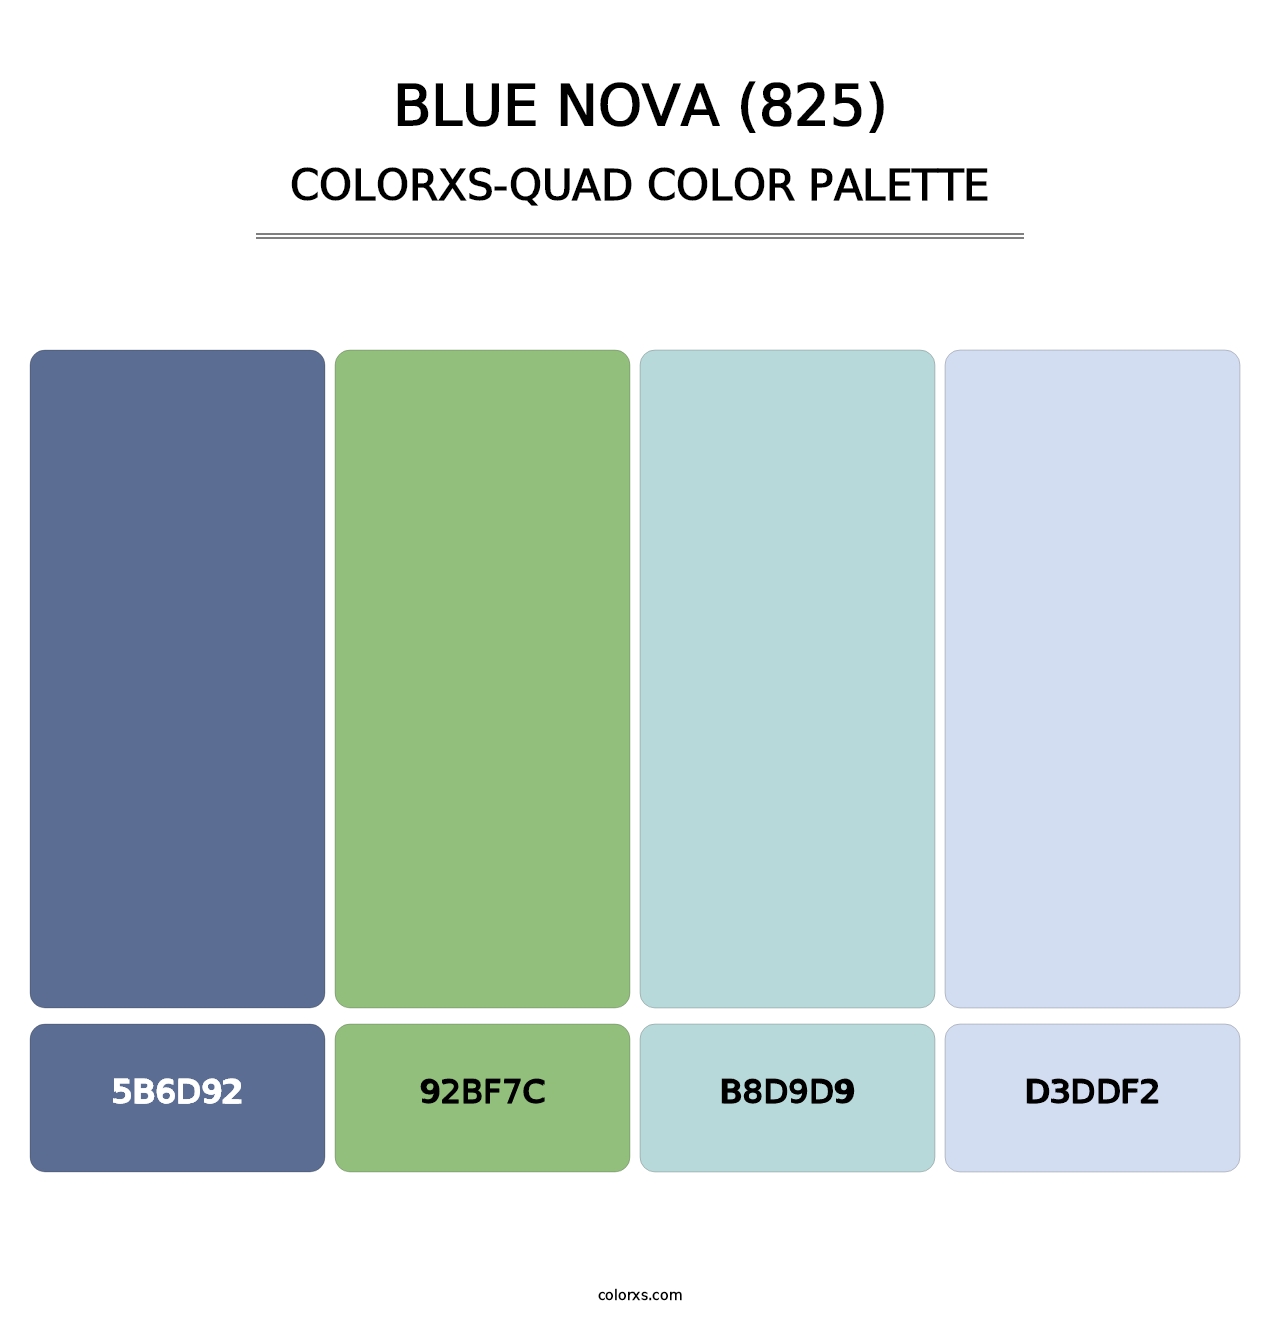 Blue Nova (825) - Colorxs Quad Palette